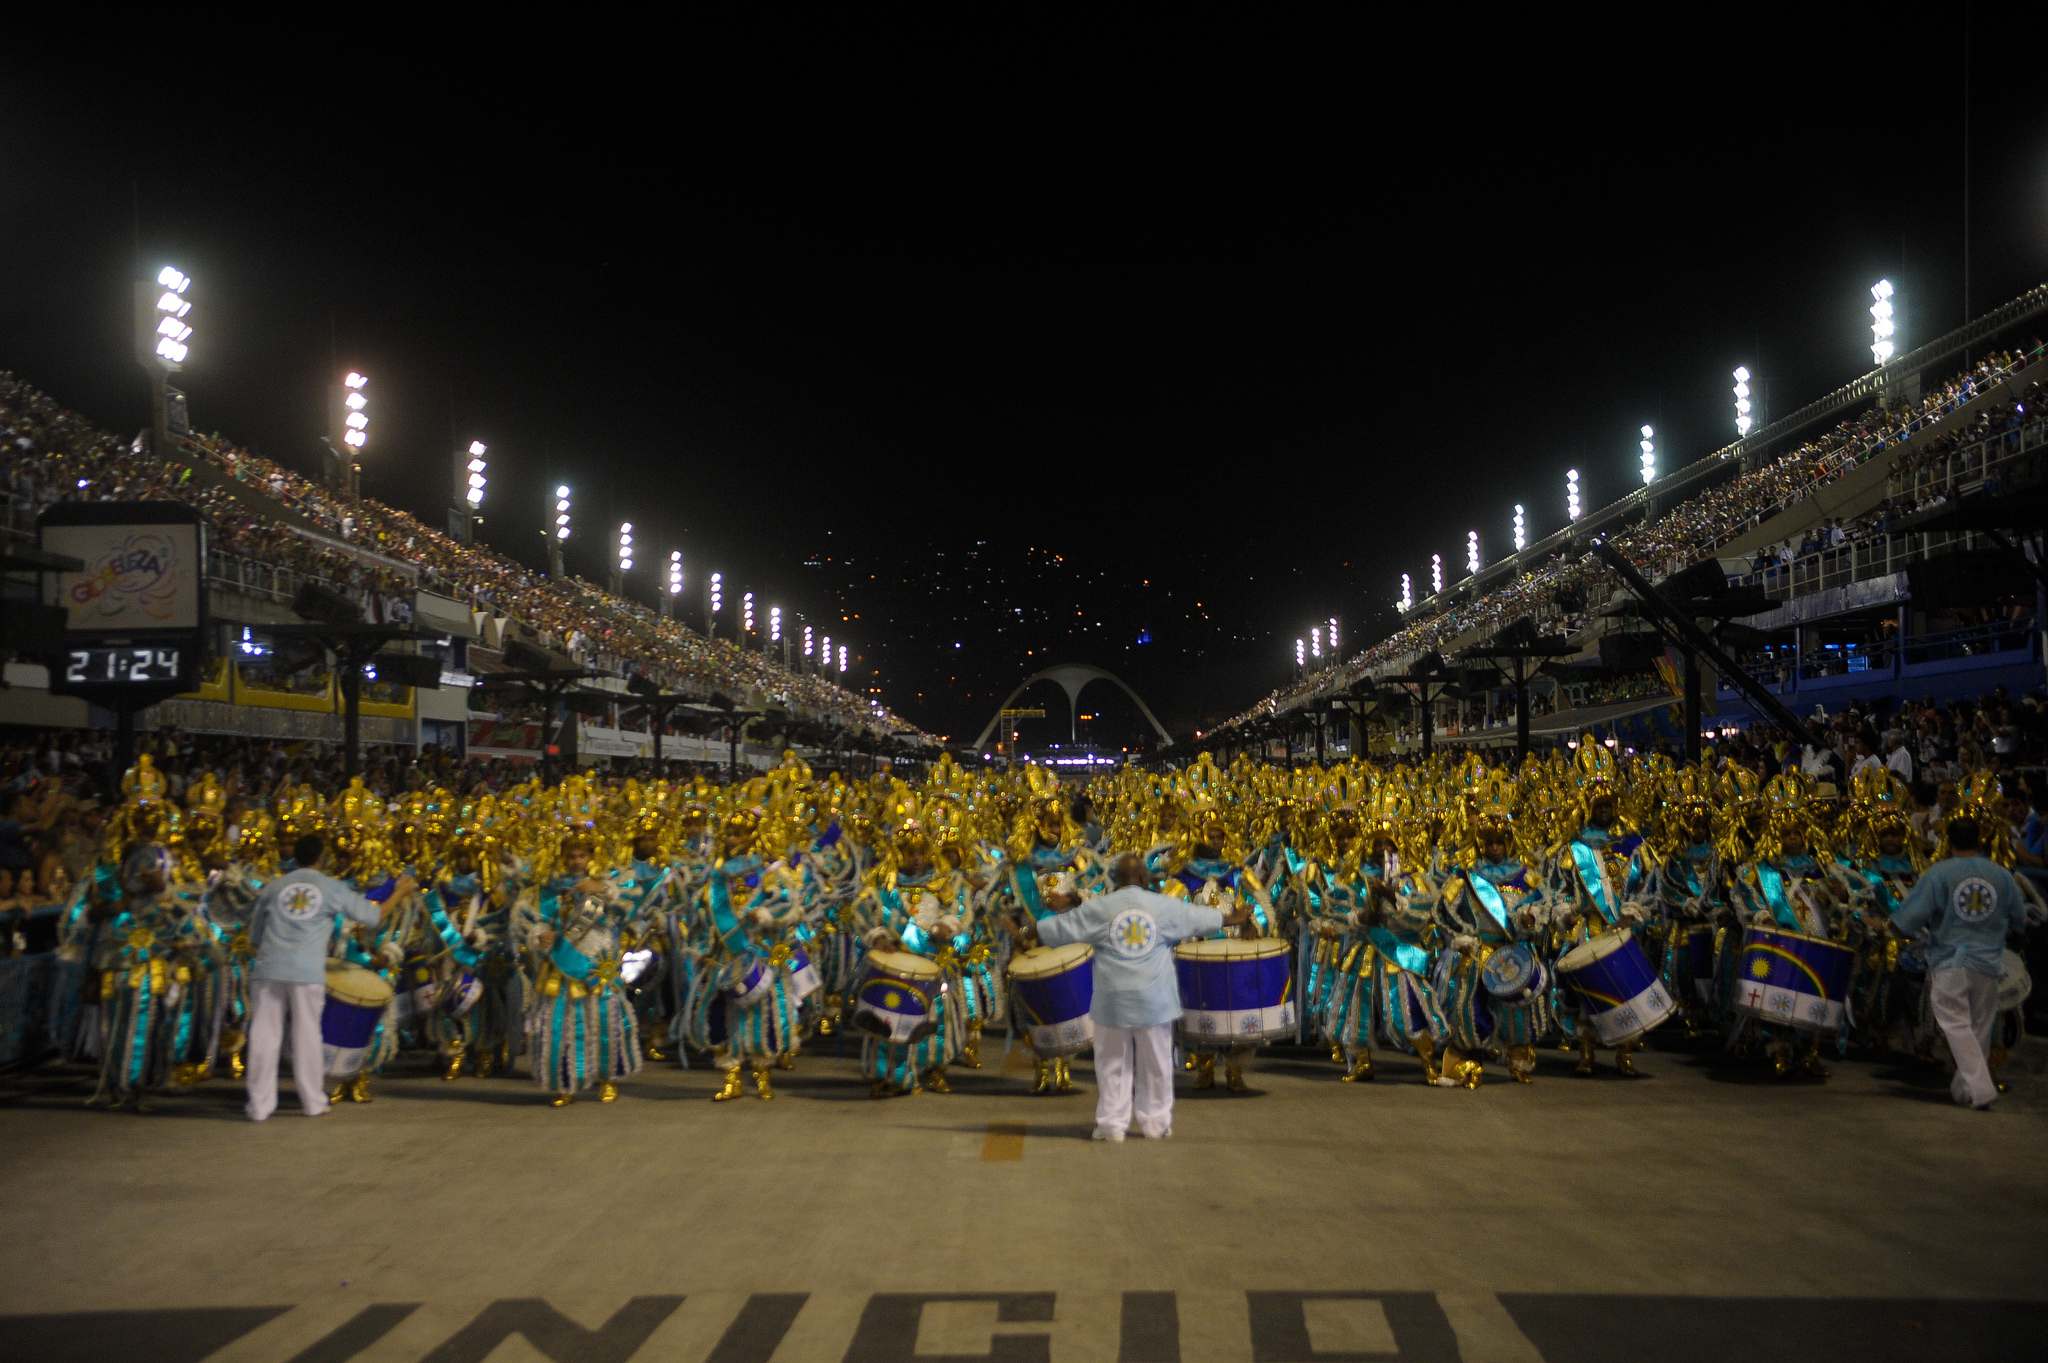 rio de janeiro 201612 Vila Isabel at Carnival in Rio de Janeiro